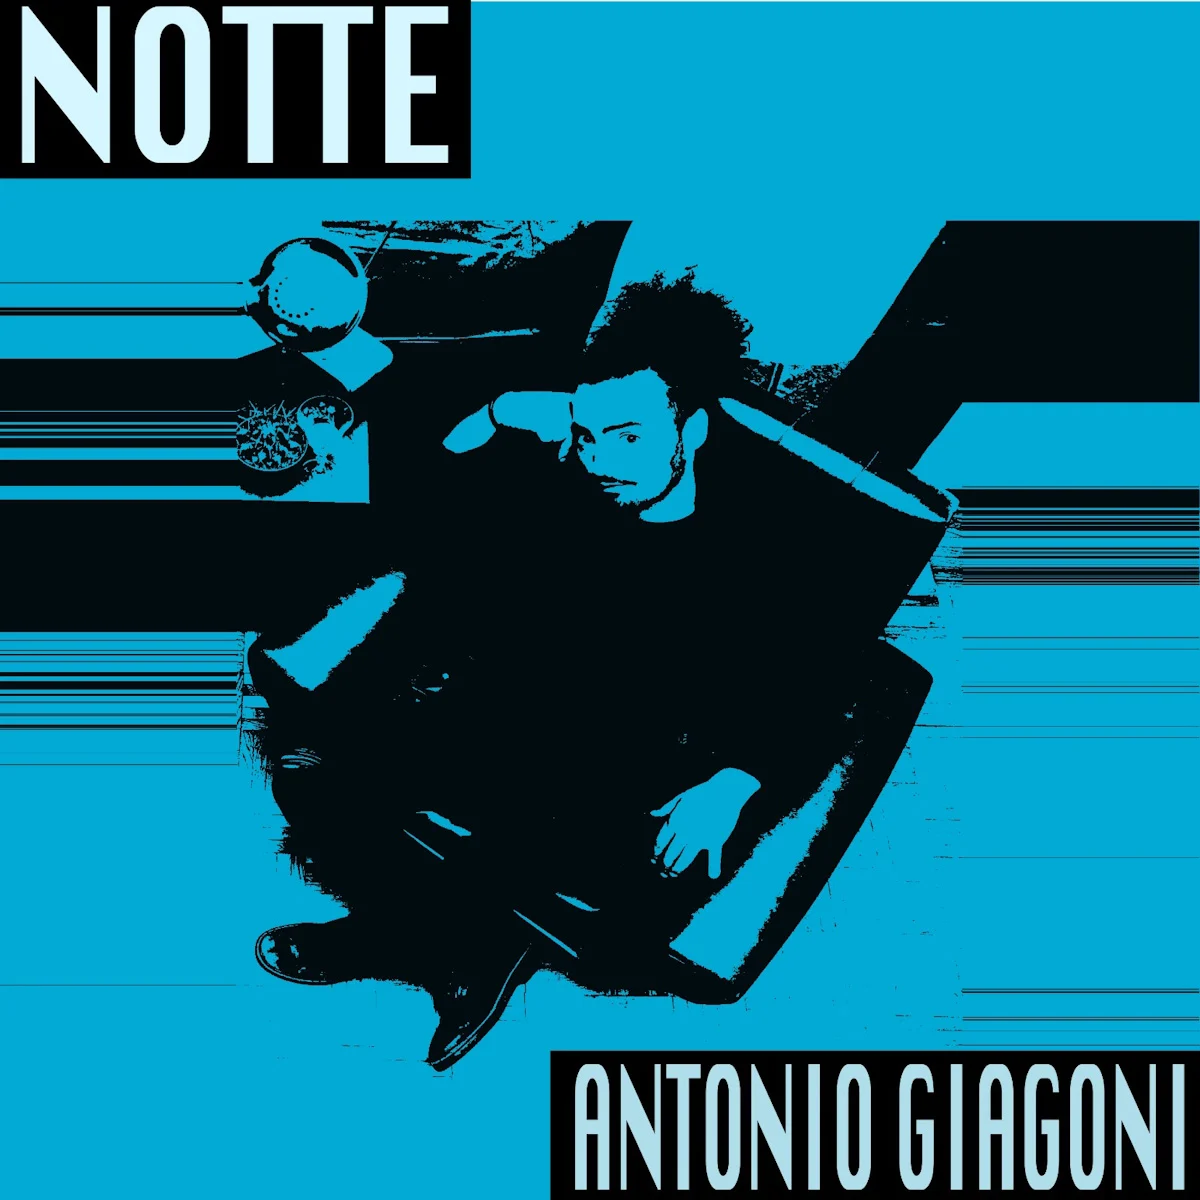 <strong> ANTONIO GIAGONI: venerdì 22 dicembre esce in radio “NOTTE” il nuovo singolo</strong>